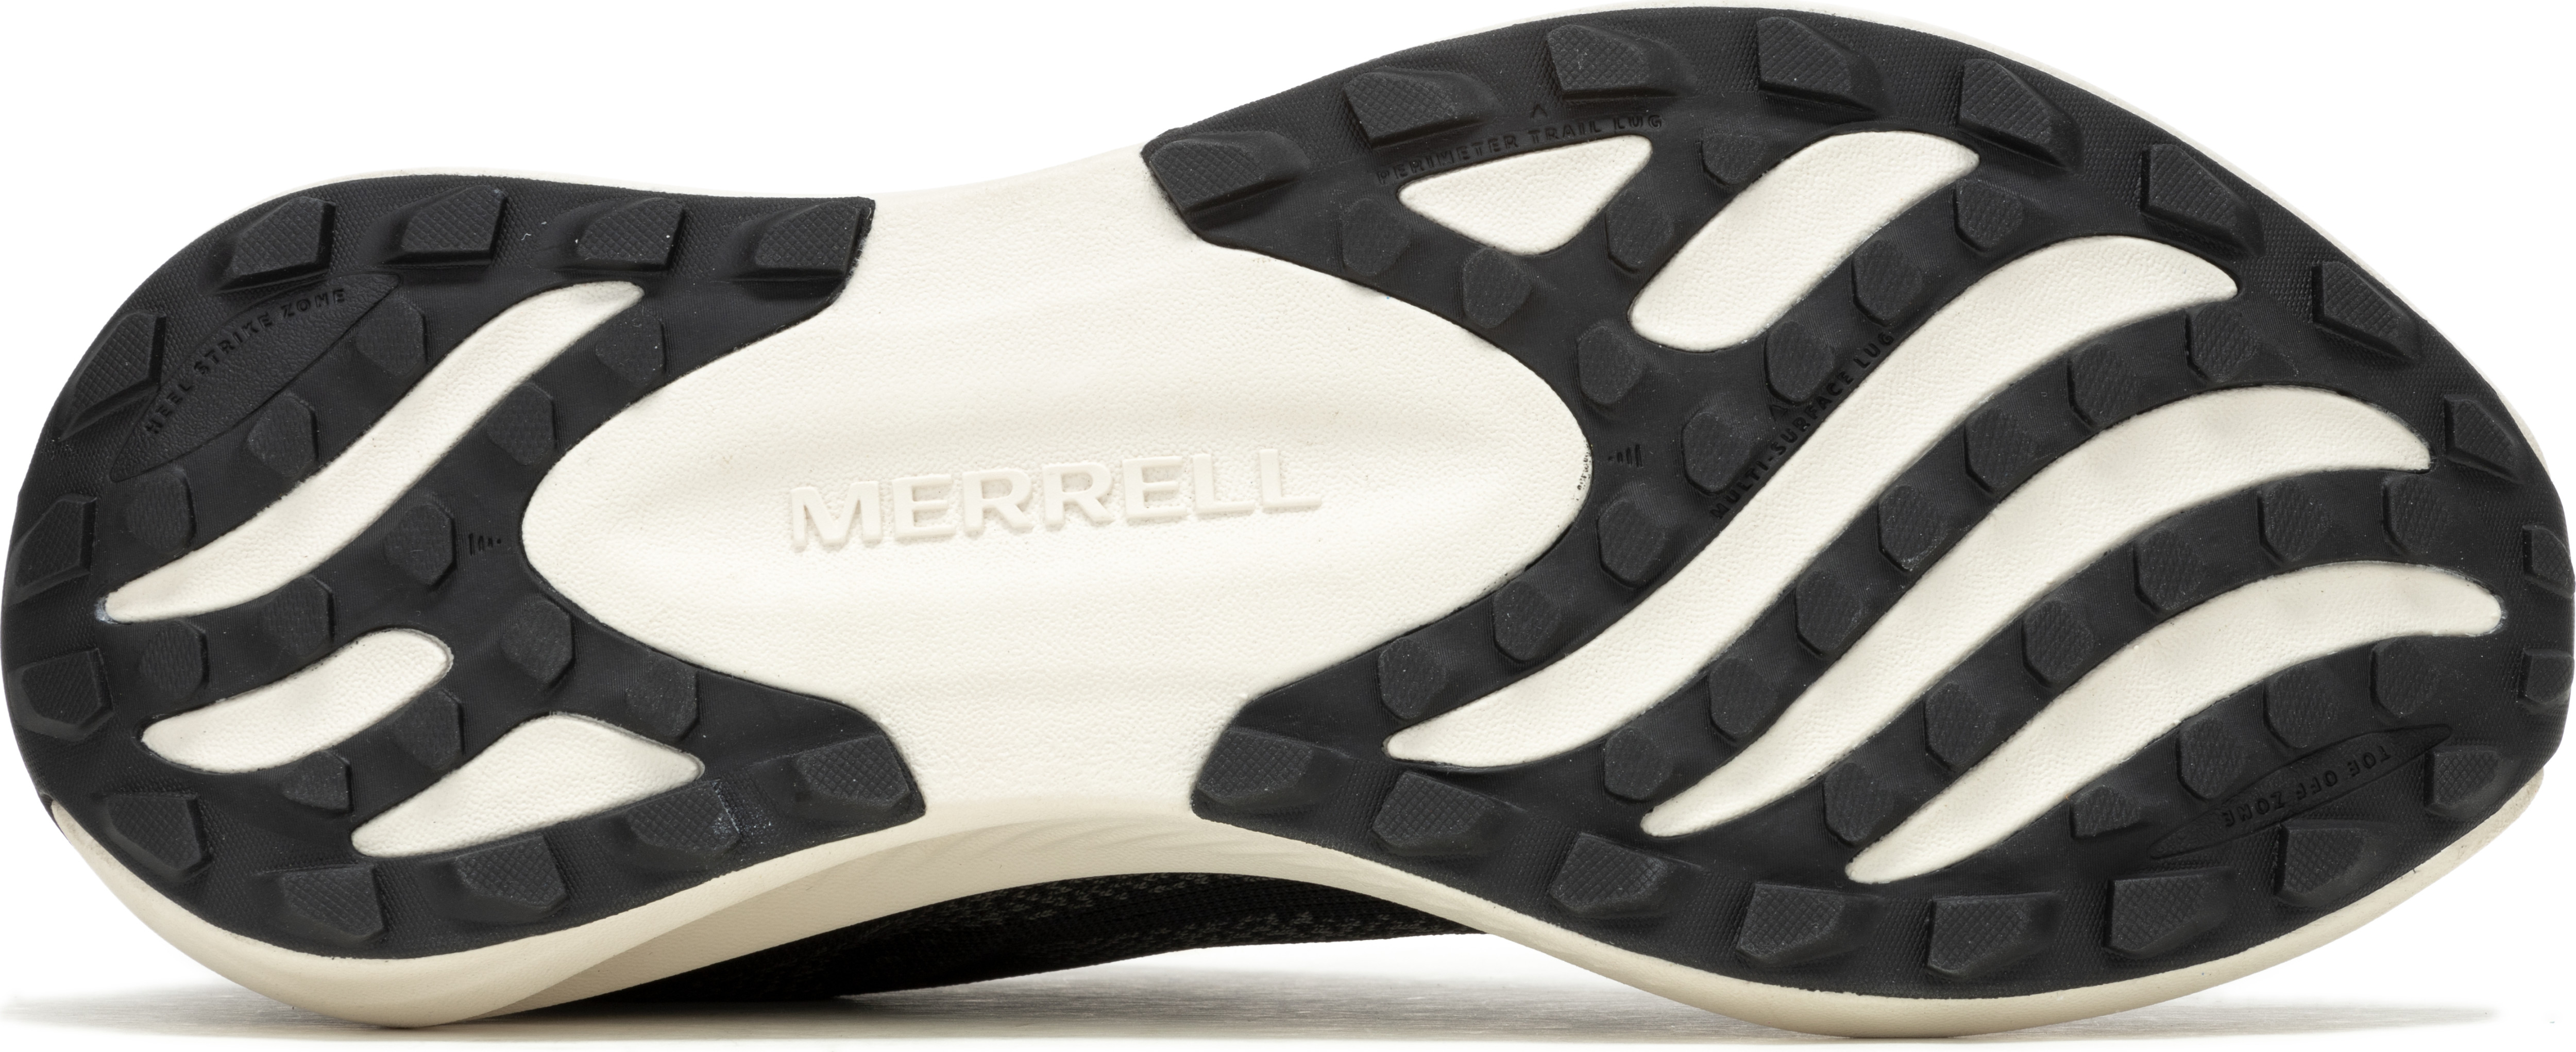 Merrell Men's Morphlite Black/White | Buy Merrell Men's Morphlite